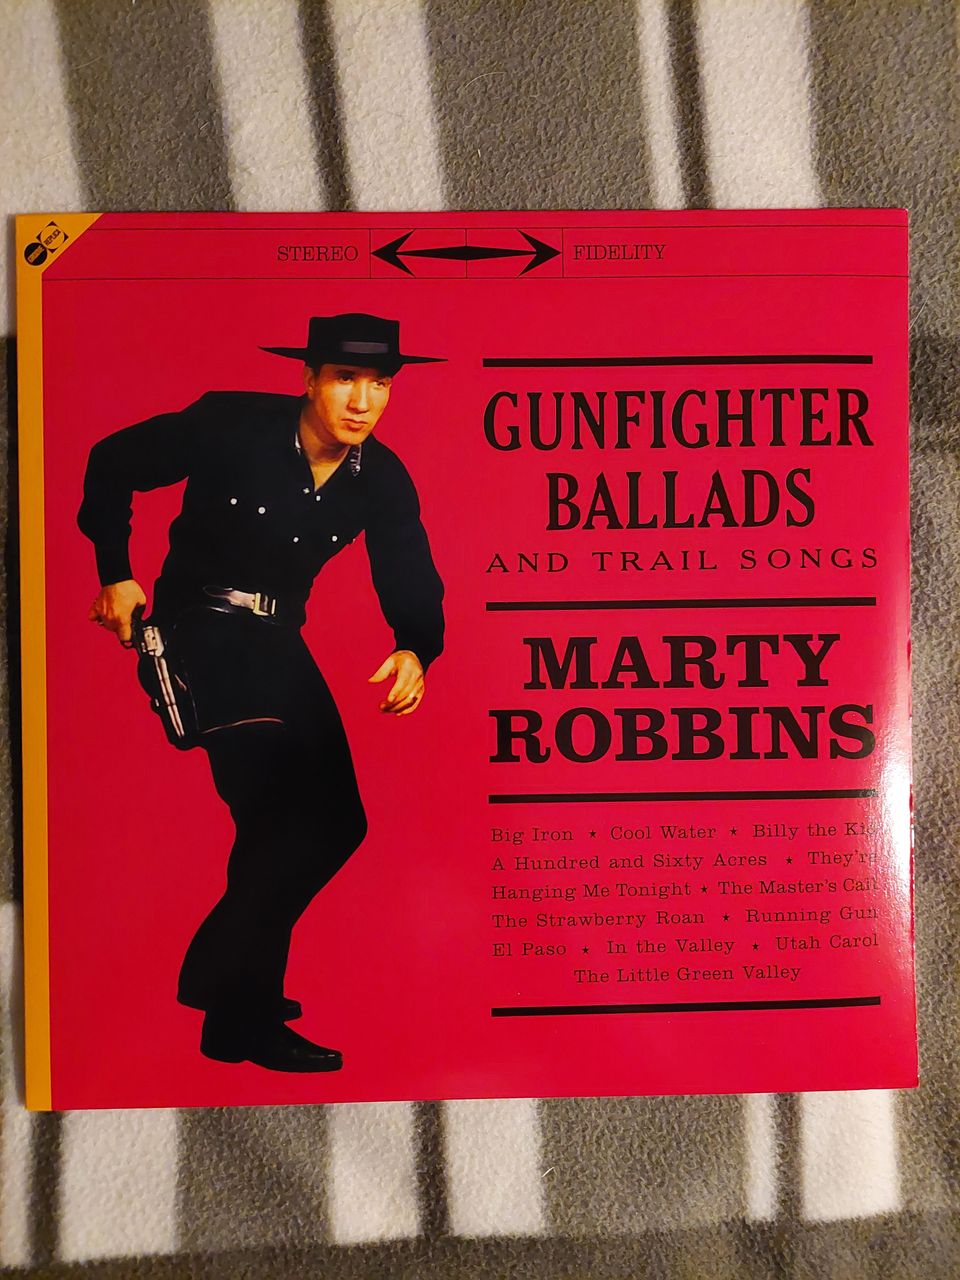 Marty Robbins gun fighter ballads LP